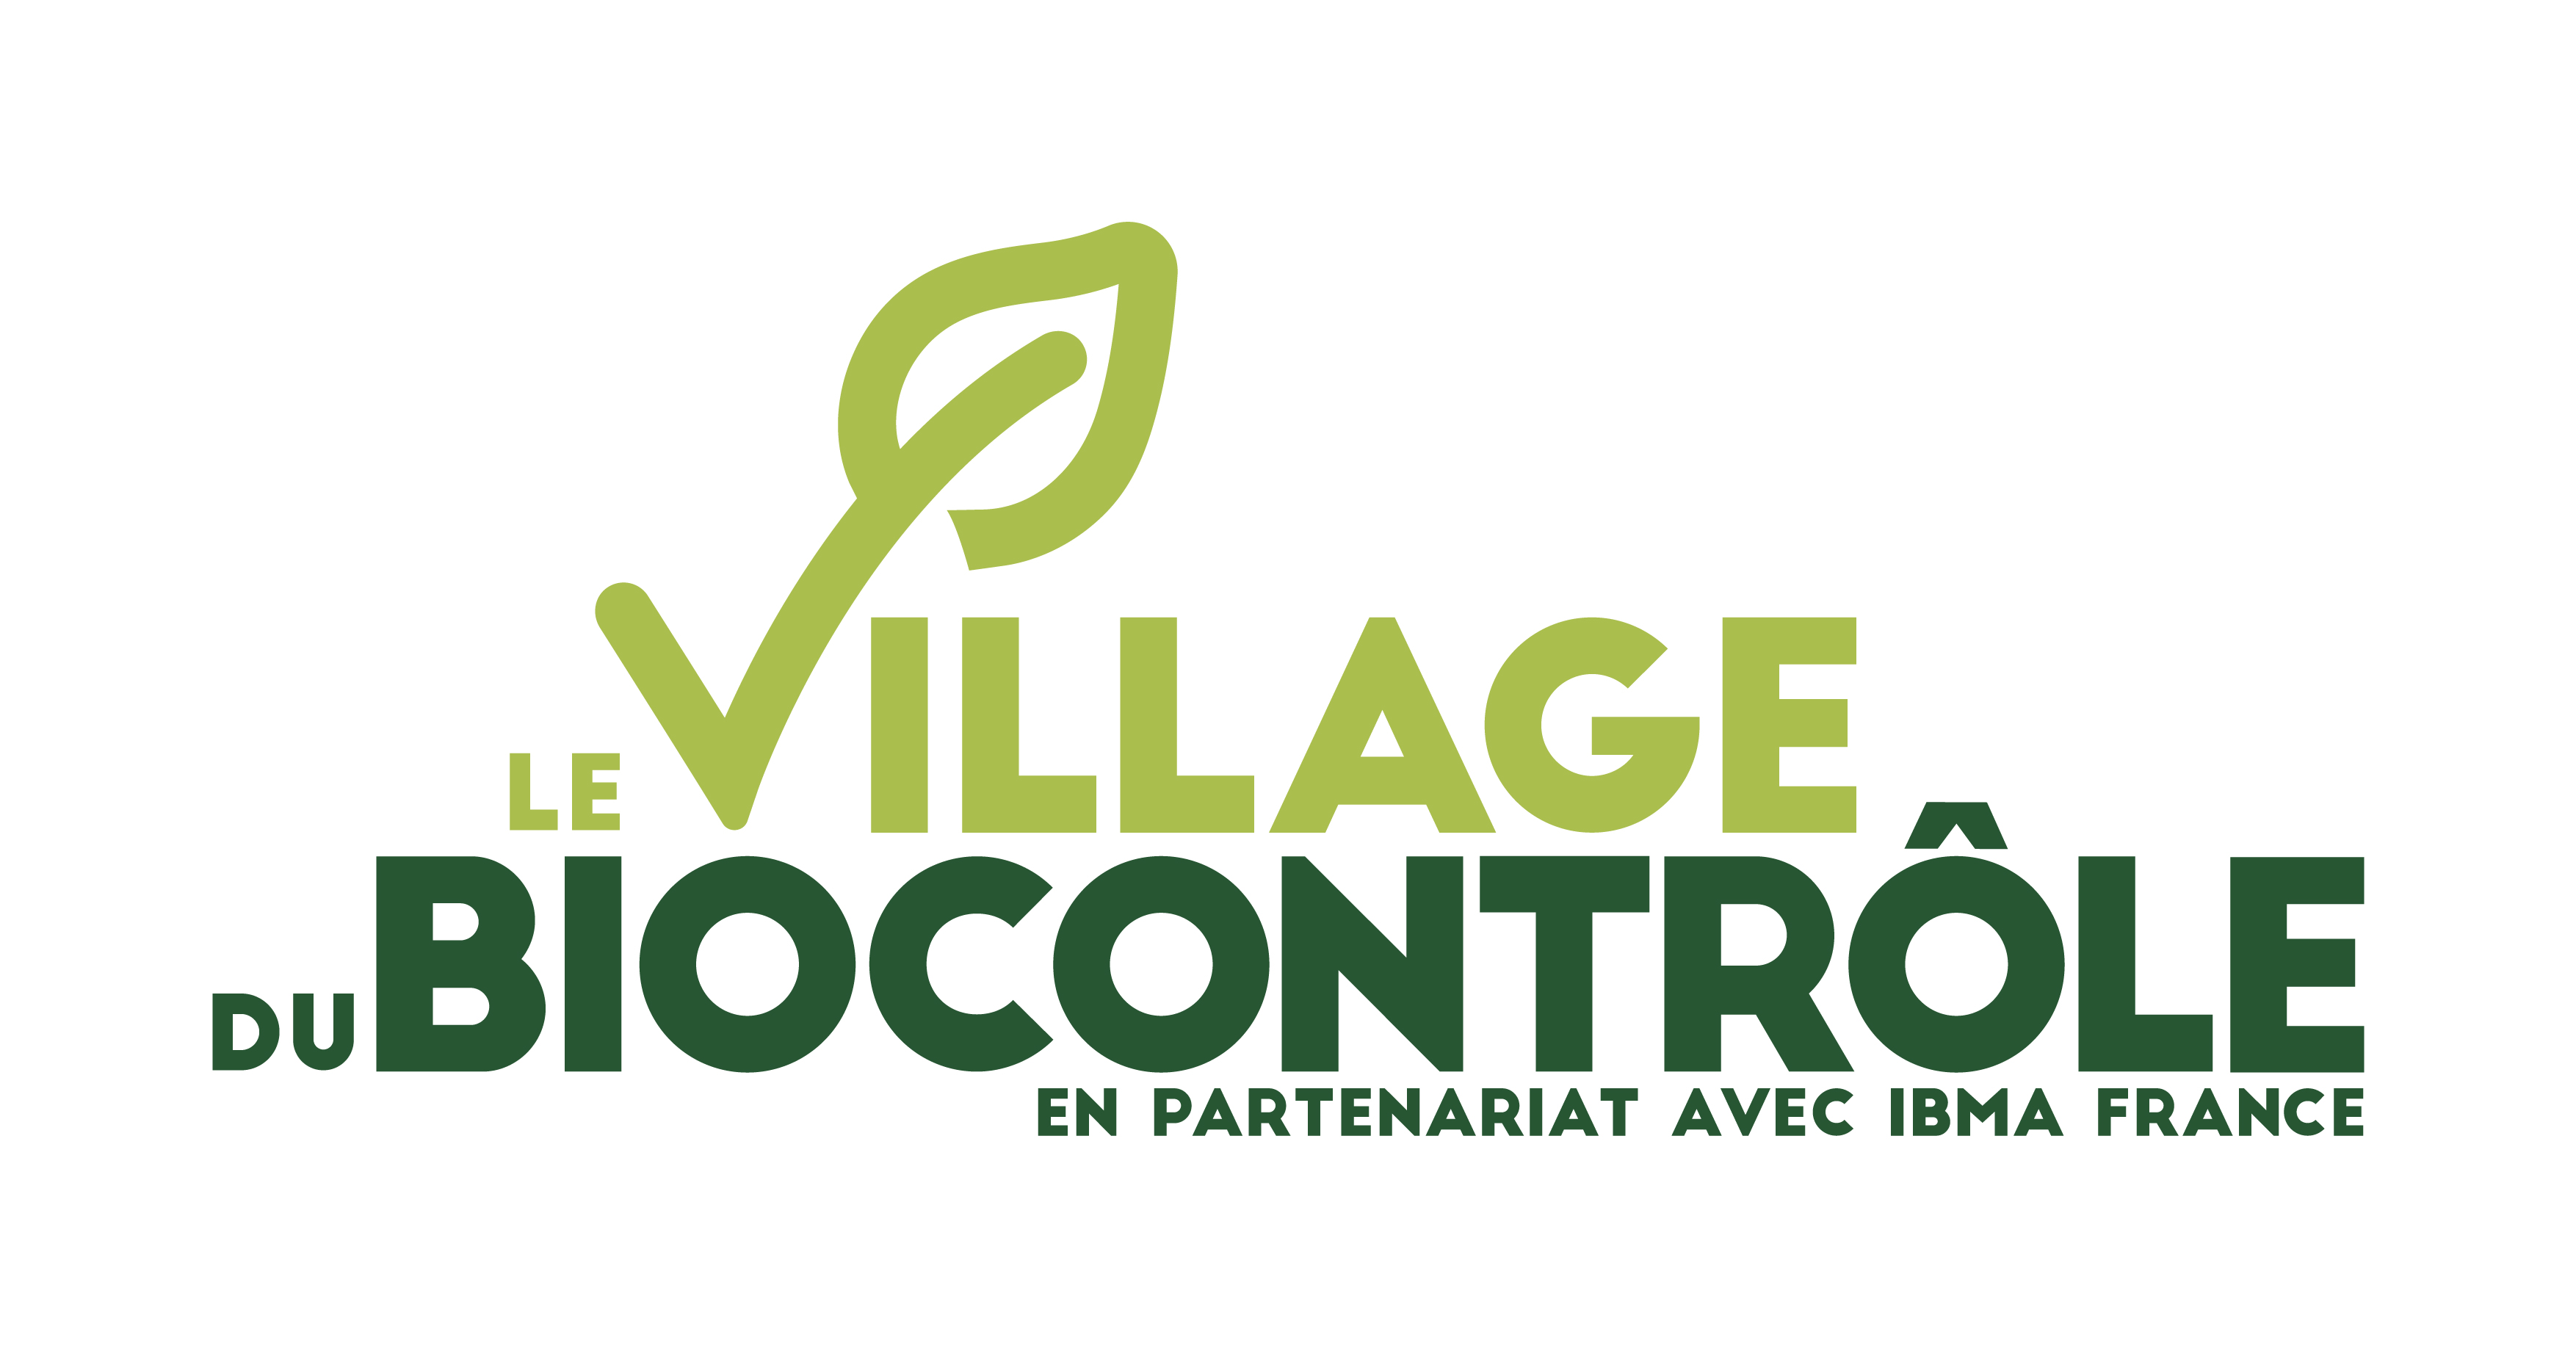 village_biocontrole_quadri_claim_plan_de_travail_1